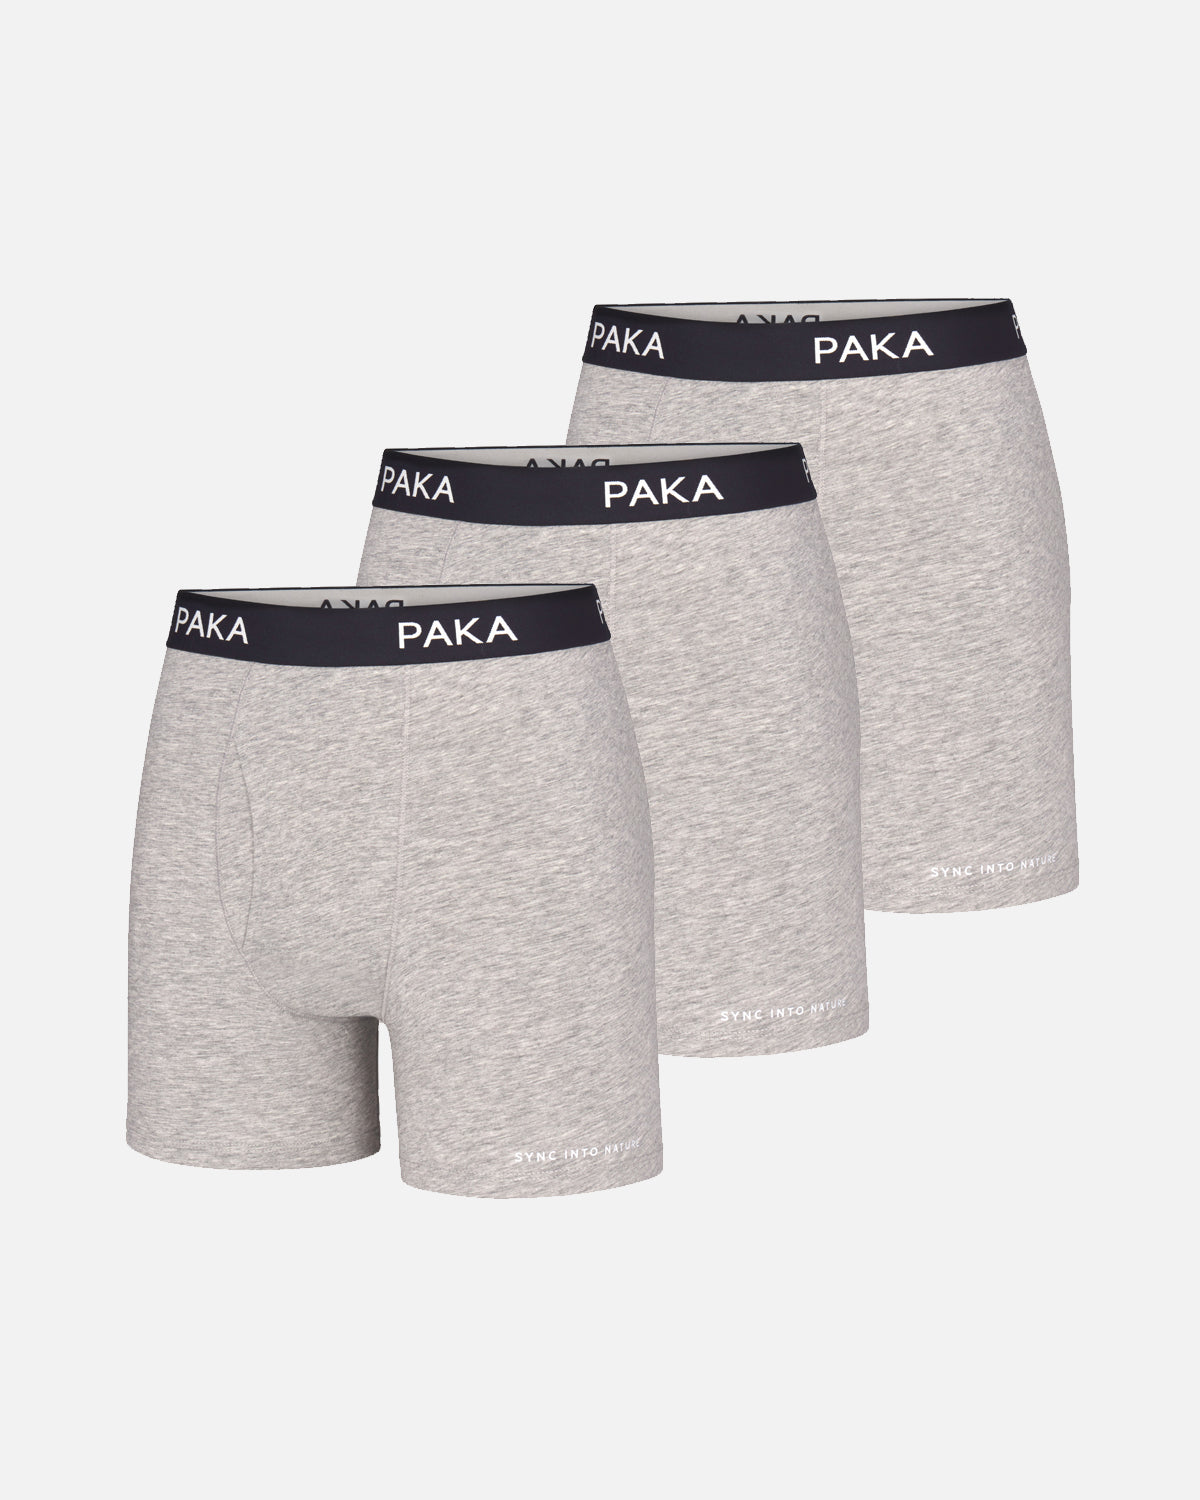 Mens 3-pack grey alpaca underwear briefs 